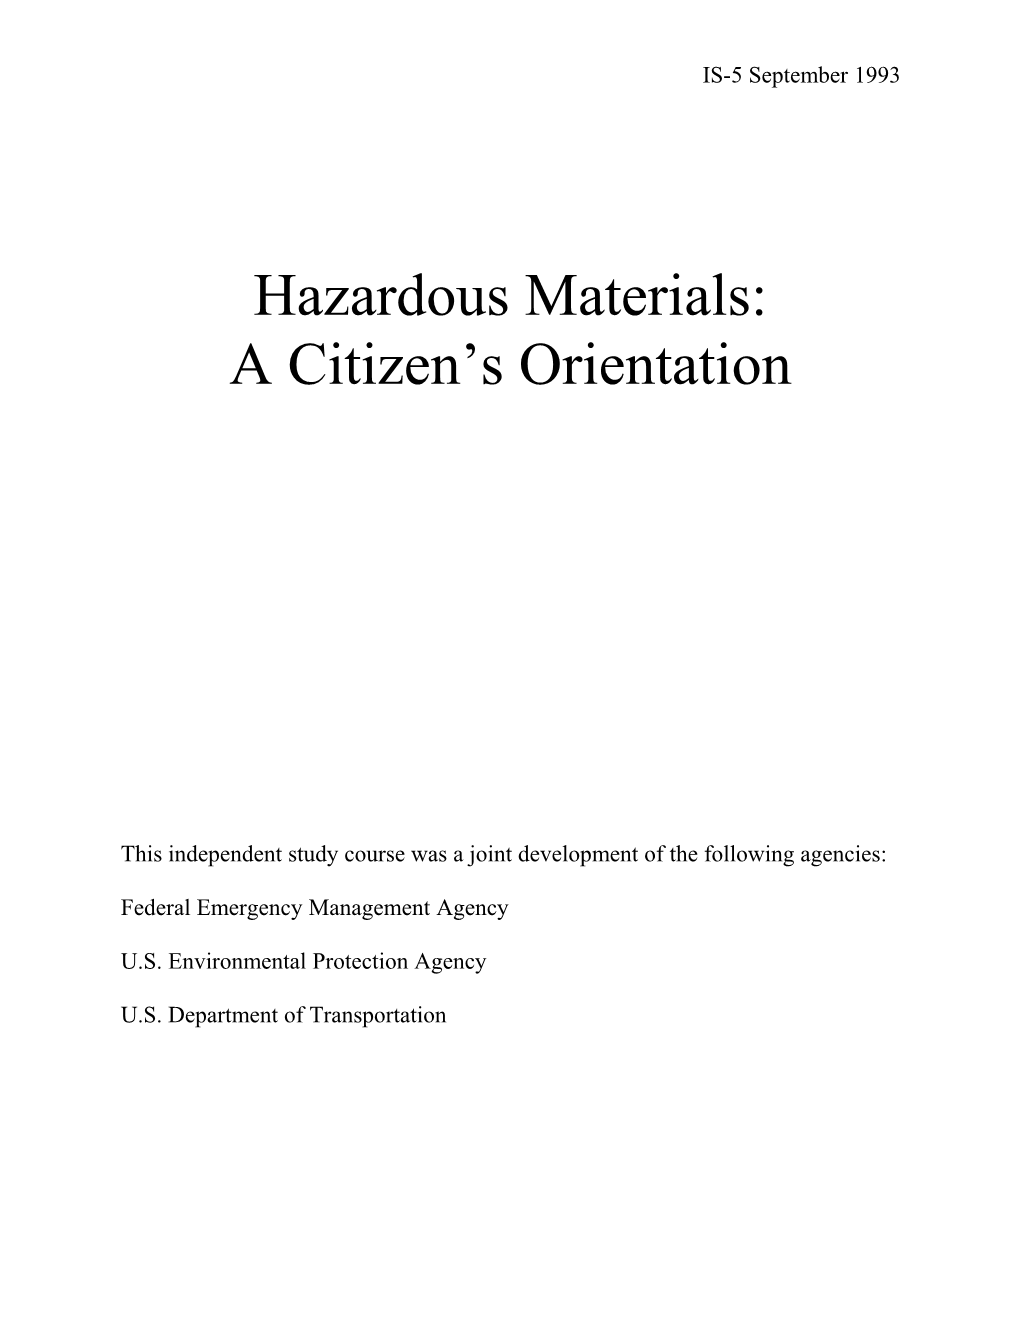 A Citizen S Orientation